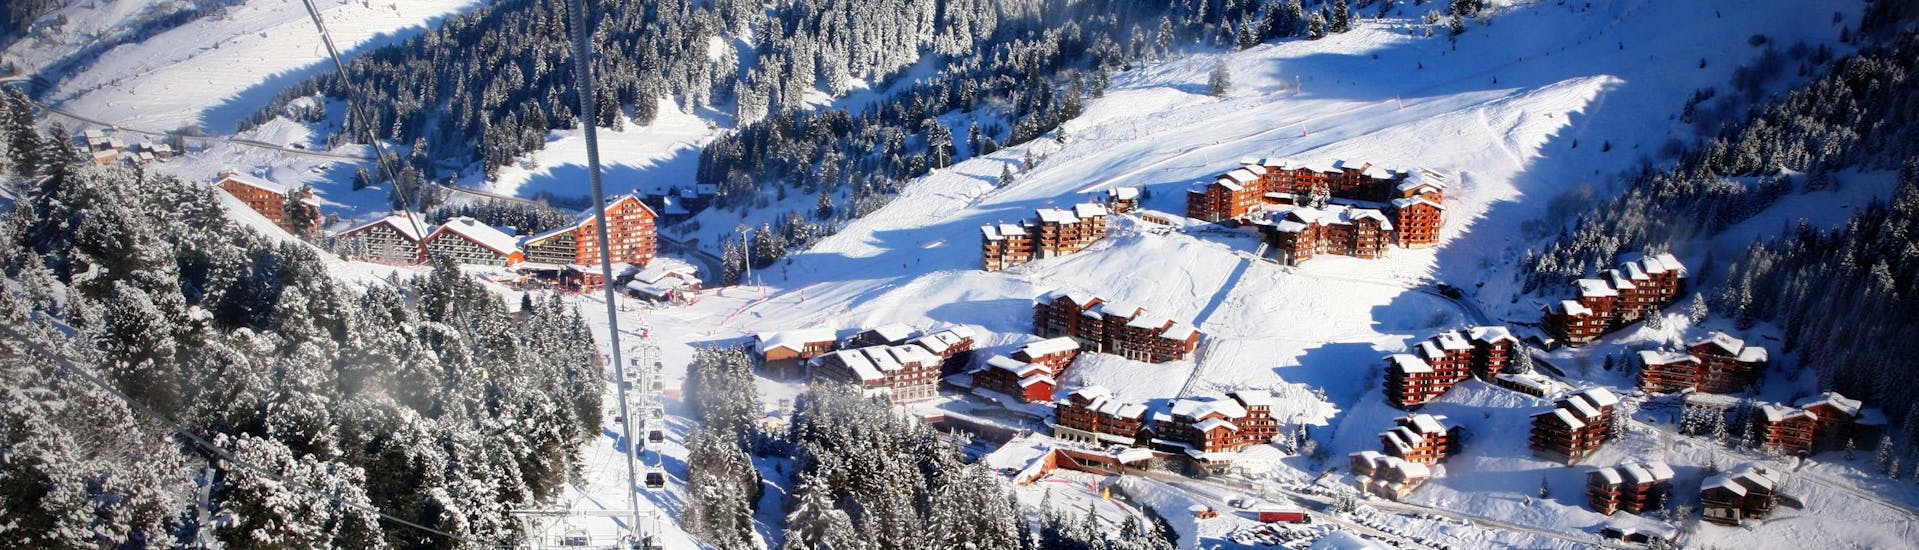 Une vue sur la station de ski de Méribel avec des télécabines qui montent au sommet de l'une des montagnes où les écoles de ski locales offrent une grande variété de cours de ski.